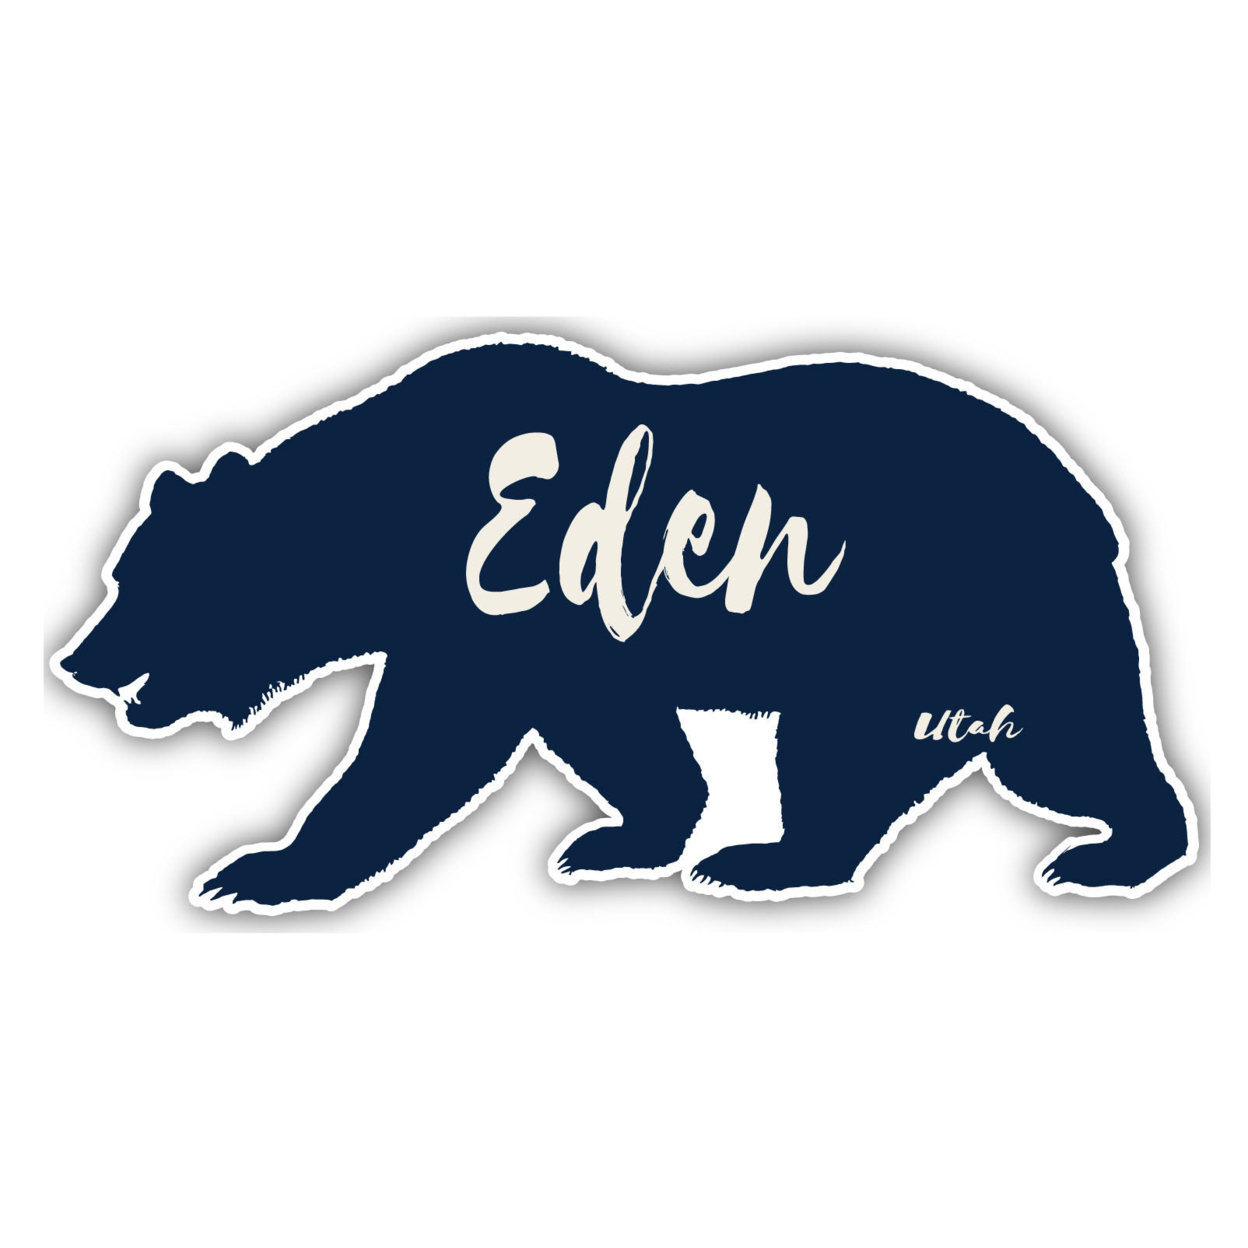 Eden Utah Souvenir Decorative Stickers (Choose Theme And Size) - Single Unit, 4-Inch, Bear